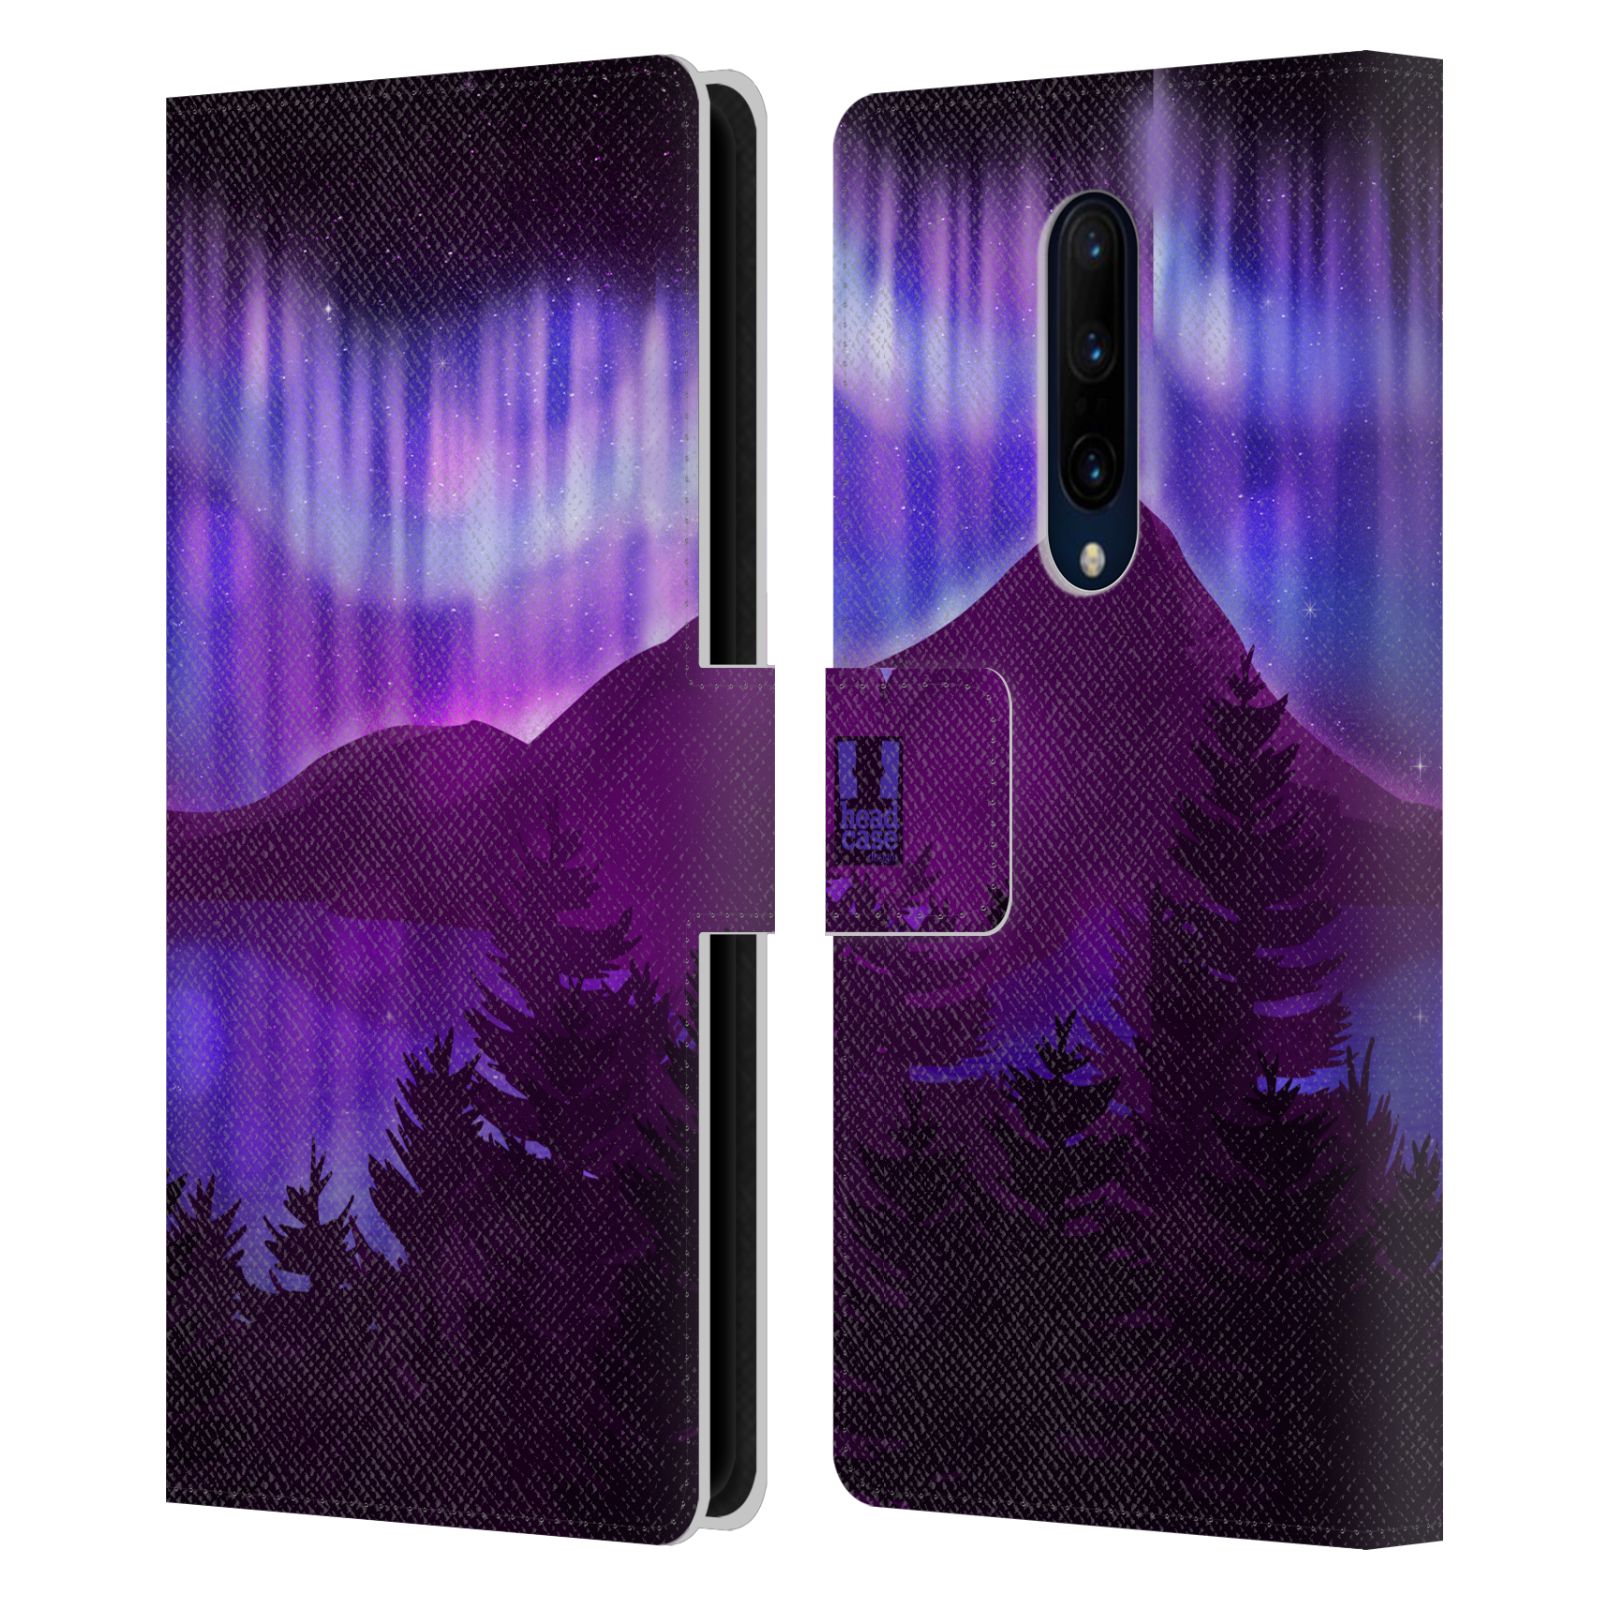 Pouzdro na mobil OnePlus 7 PRO  - HEAD CASE - Hory a lesy fialový odstín